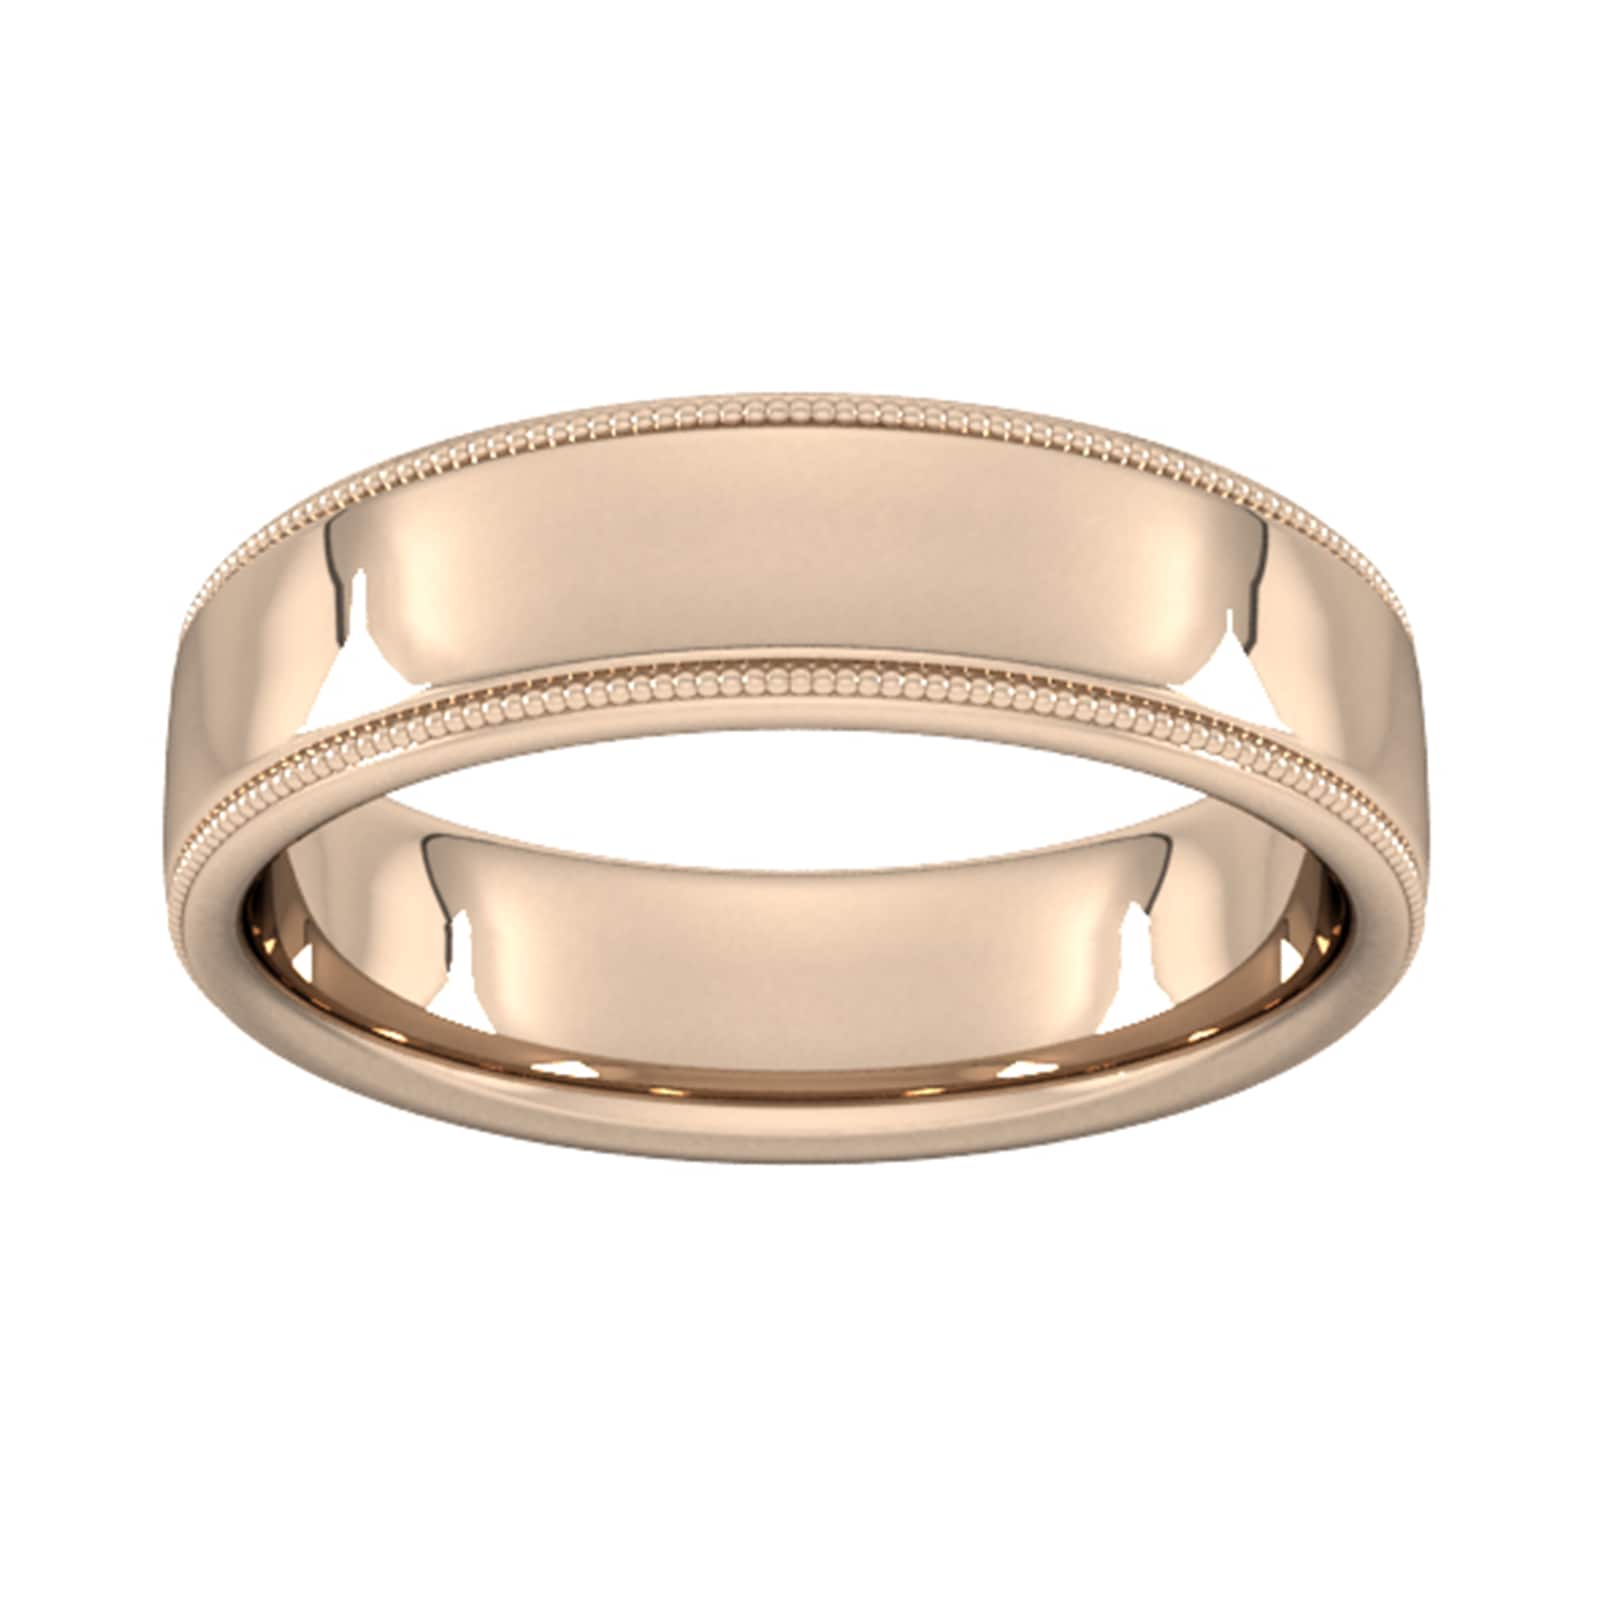 6mm Slight Court Standard Milgrain Edge Wedding Ring In 18 Carat Rose Gold - Ring Size Q